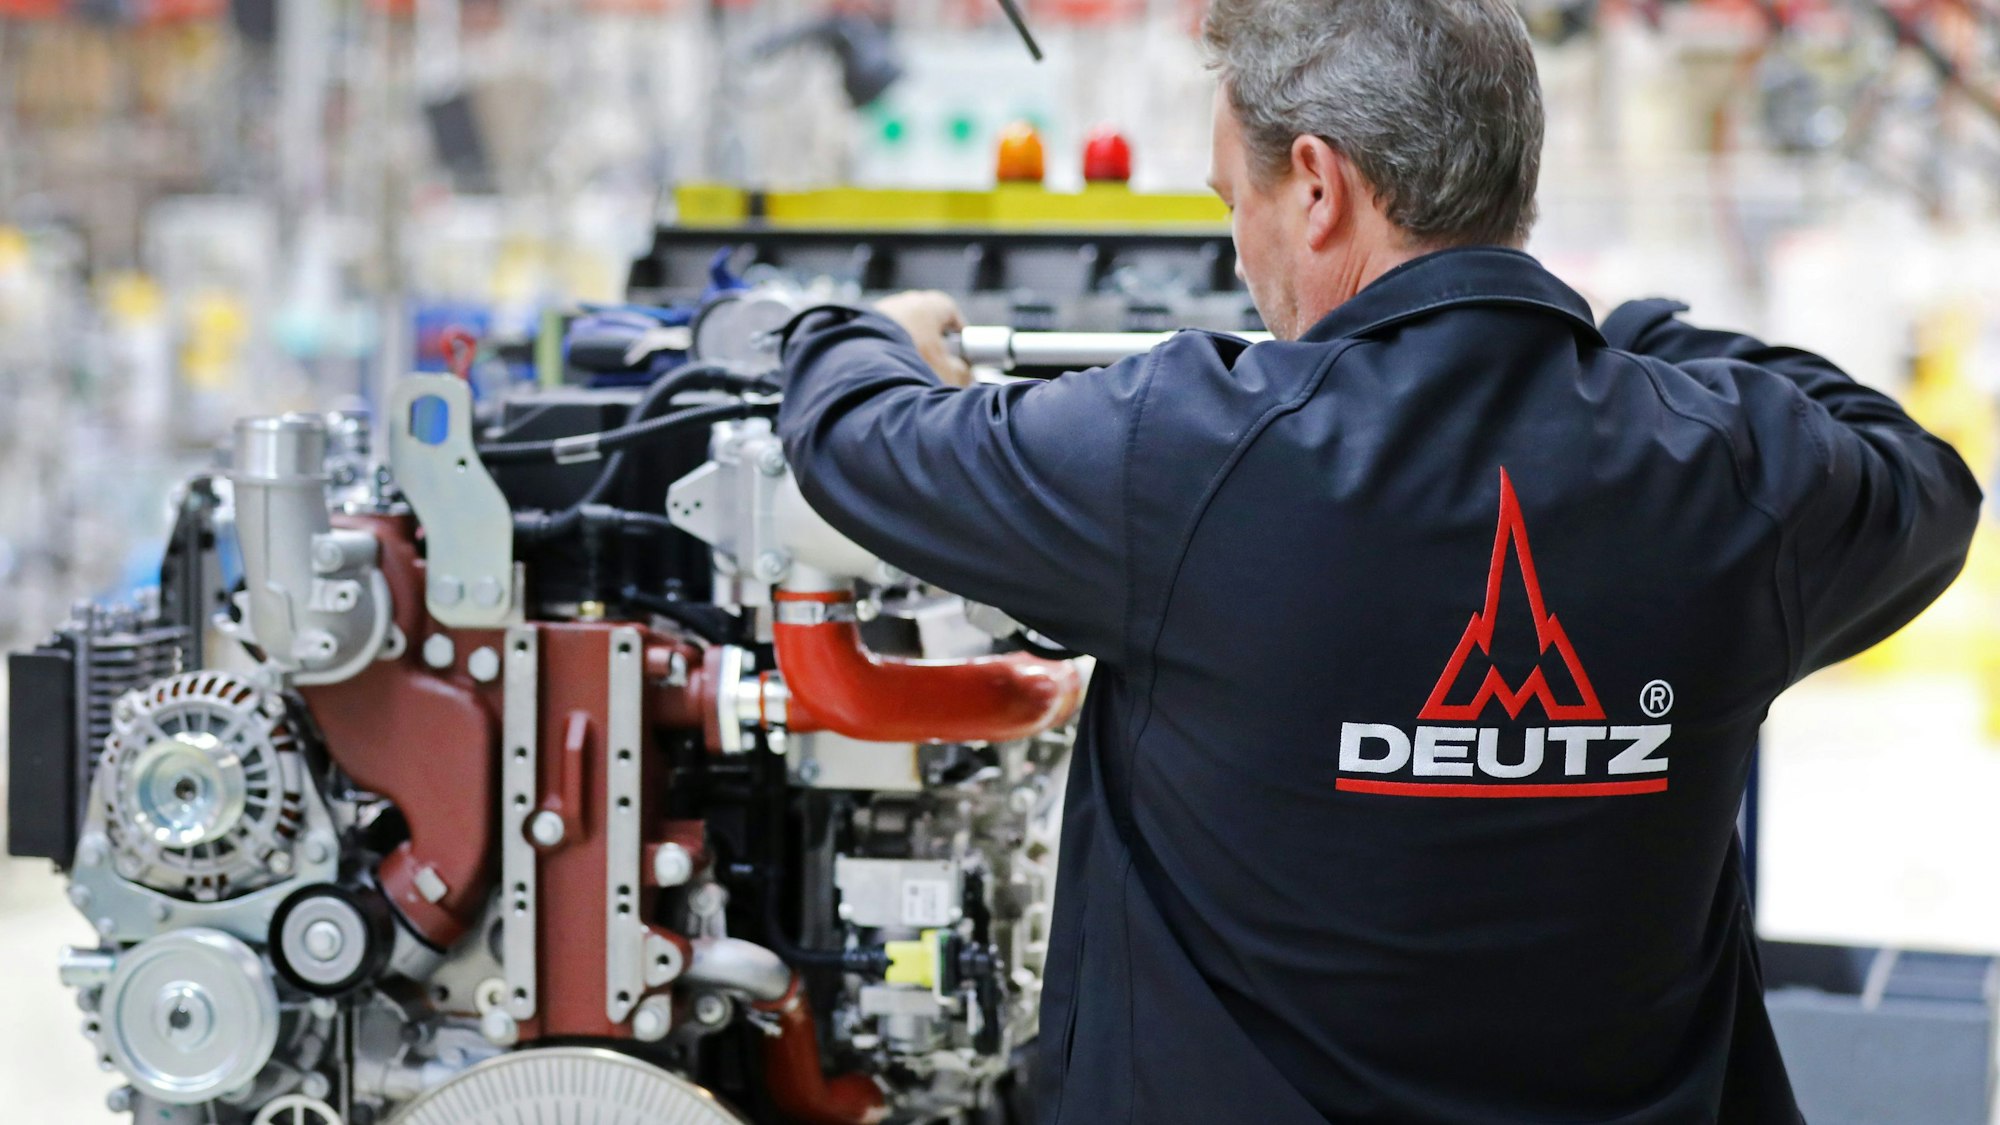 Ein Mitarbeiter des Motorenherstellers Deutz arbeitet bei der Herstellung von Dieselmotoren. Der Motorenbauer Deutz hat angesichts der Corona-Krise im ersten Quartal rote Zahlen geschrieben. Unter dem Strich stand ein Verlust von 10 Millionen Euro nach einem Gewinn von 20,9 Millionen Euro im Vorjahreszeitraum, wie das im SDax notierte Unternehmen am Donnerstag in Köln mitteilte. +++ dpa-Bildfunk +++